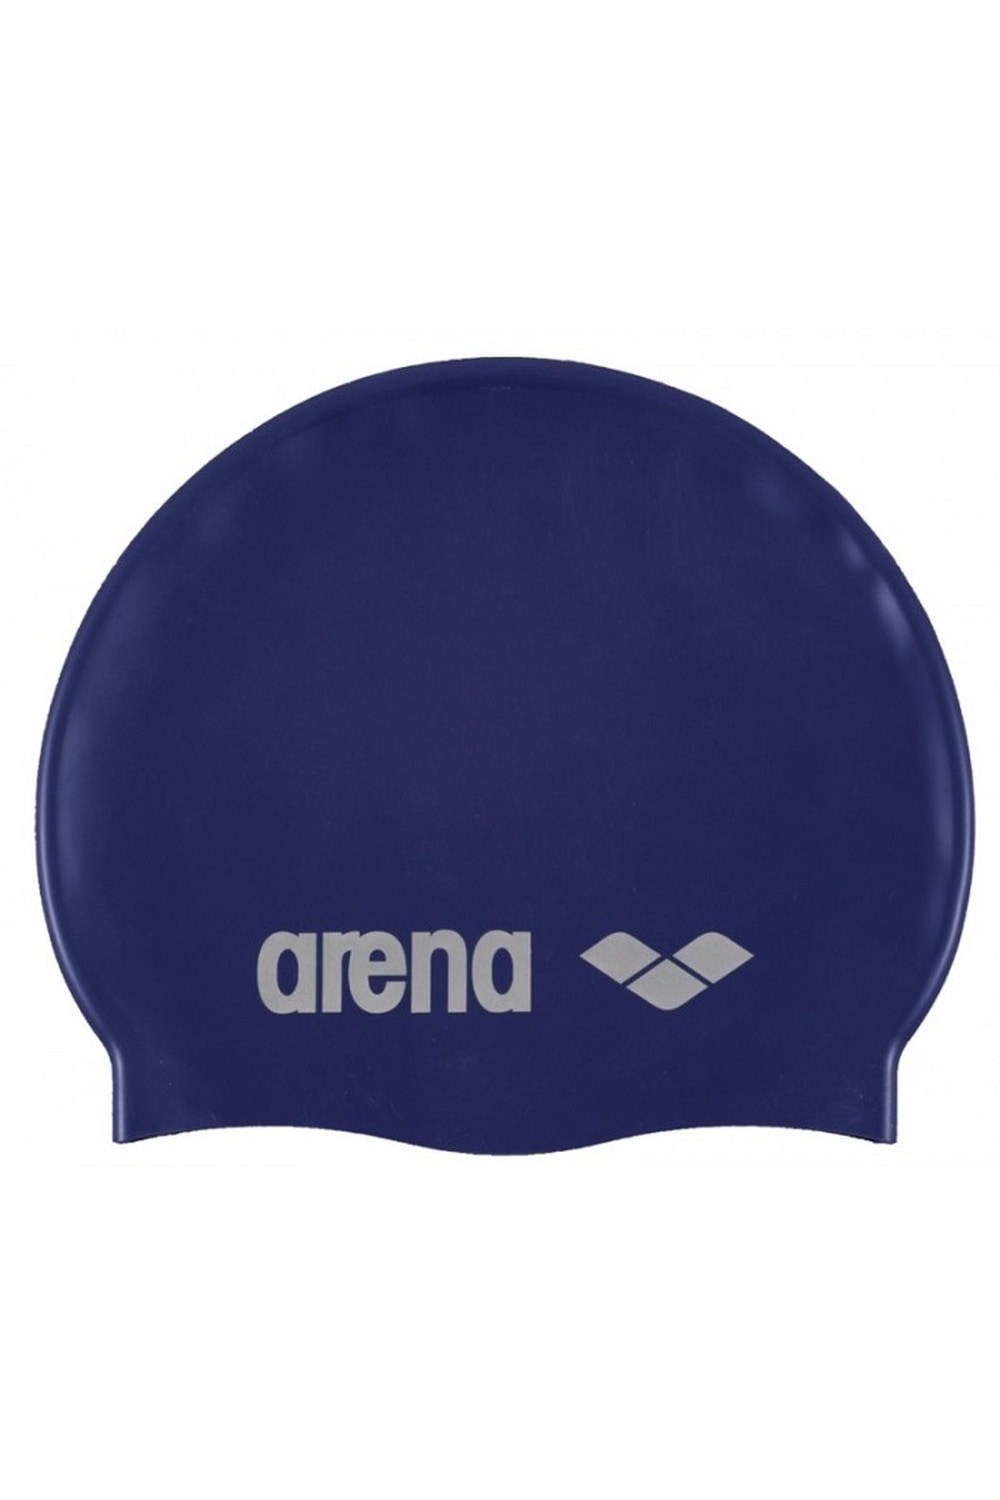 Unisex Adult Classic Silicone Swim Cap -